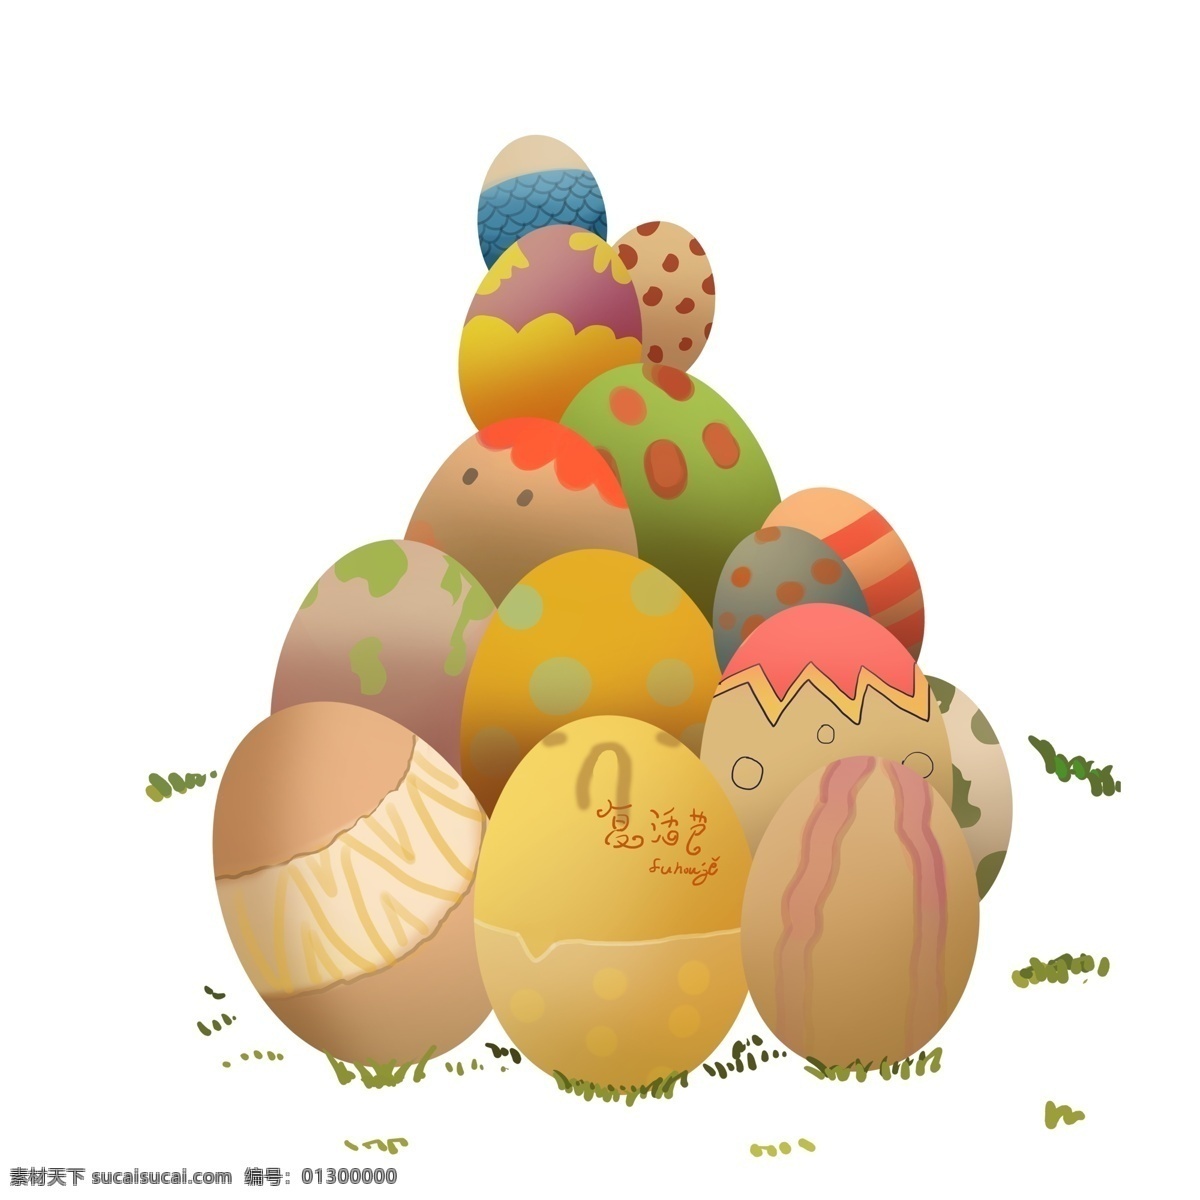 彩绘 堆 彩蛋 设计素材 彩色 卡通 复活节 插画 蛋